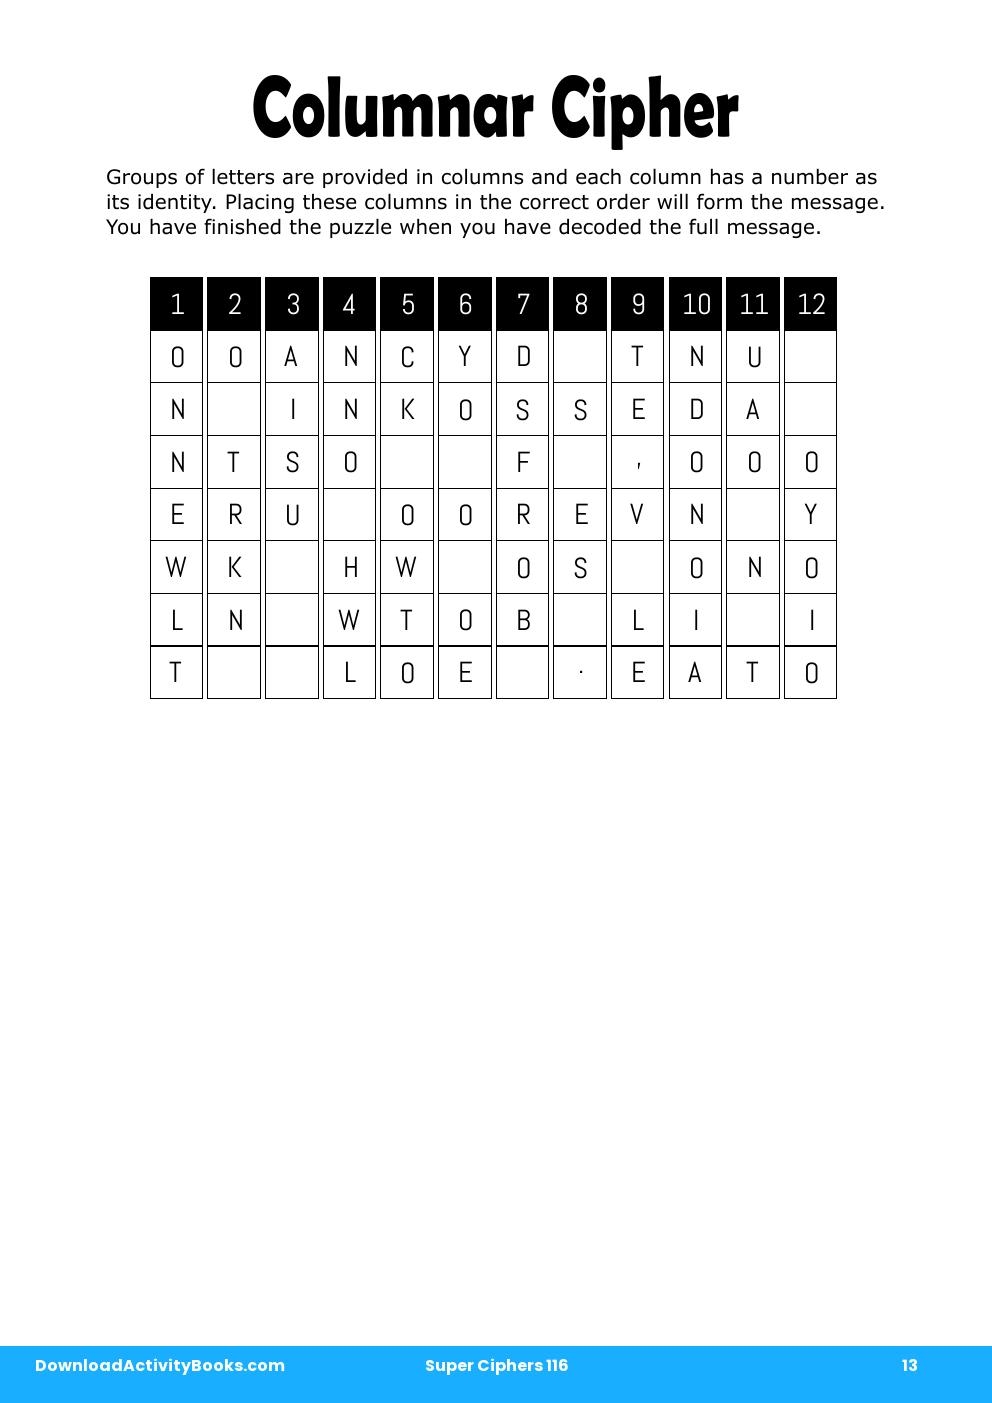 Columnar Cipher in Super Ciphers 116